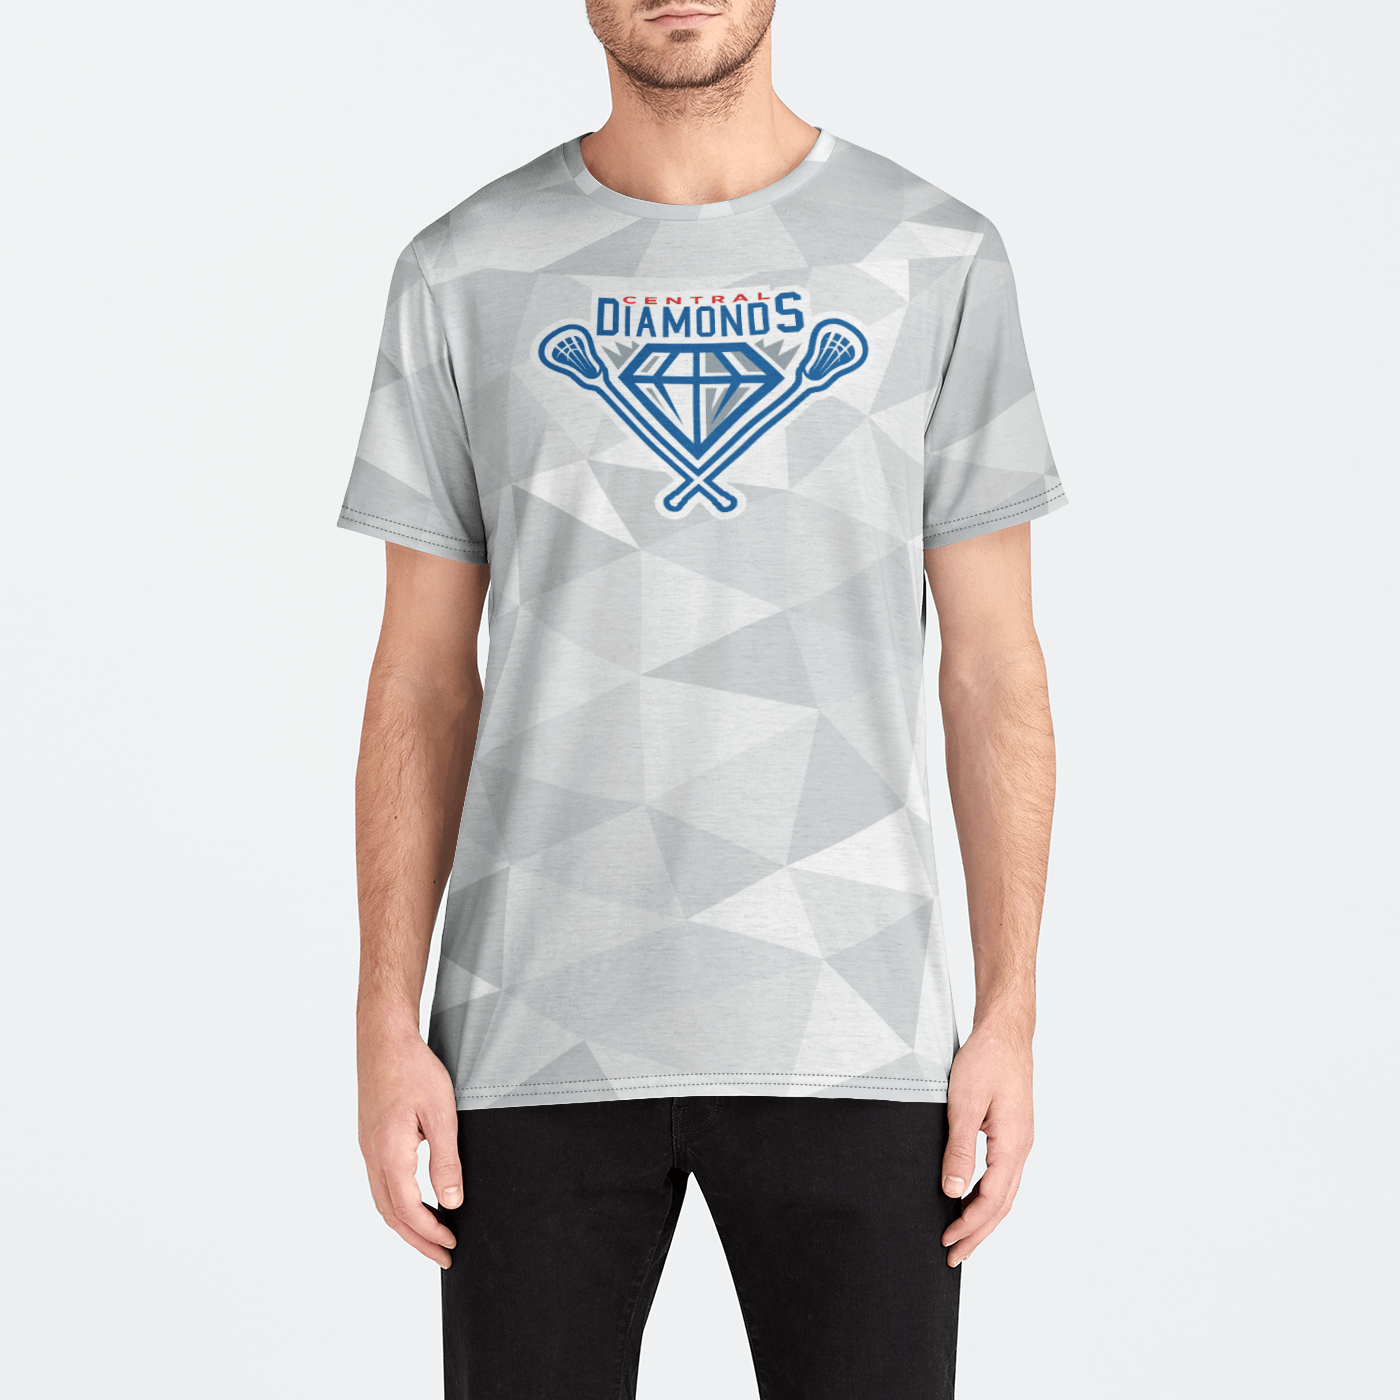 Central Diamonds Adult Athletic T-Shirt (Men's) Signature Lacrosse